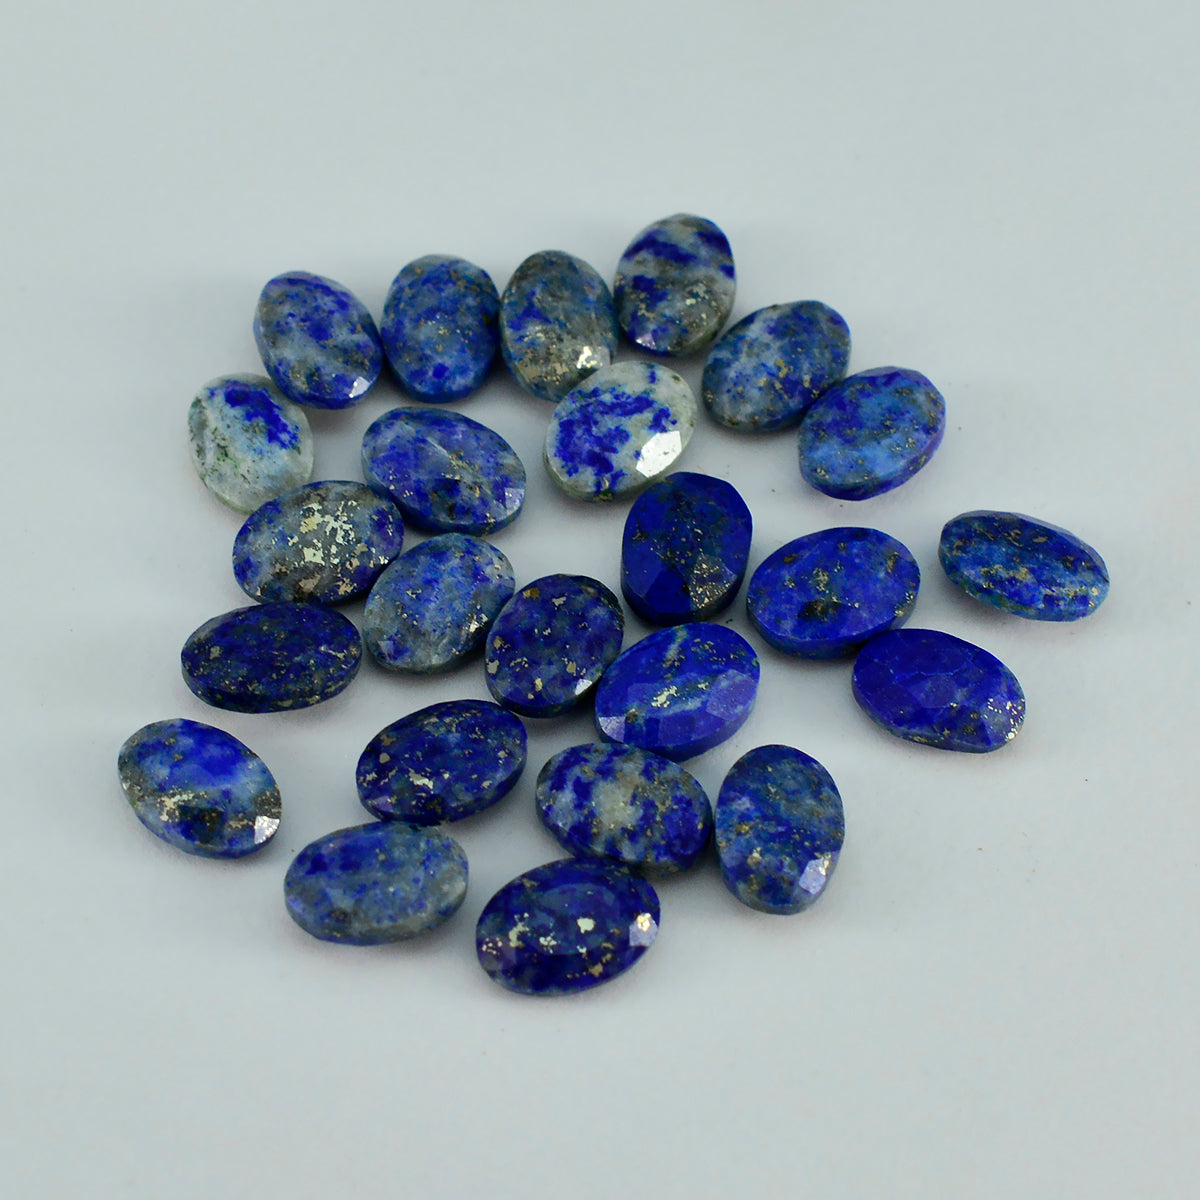 Riyogems 1PC Echte Blauwe Lapis Lazuli Facet 6x8 mm Ovale Vorm Mooie Kwaliteit Steen